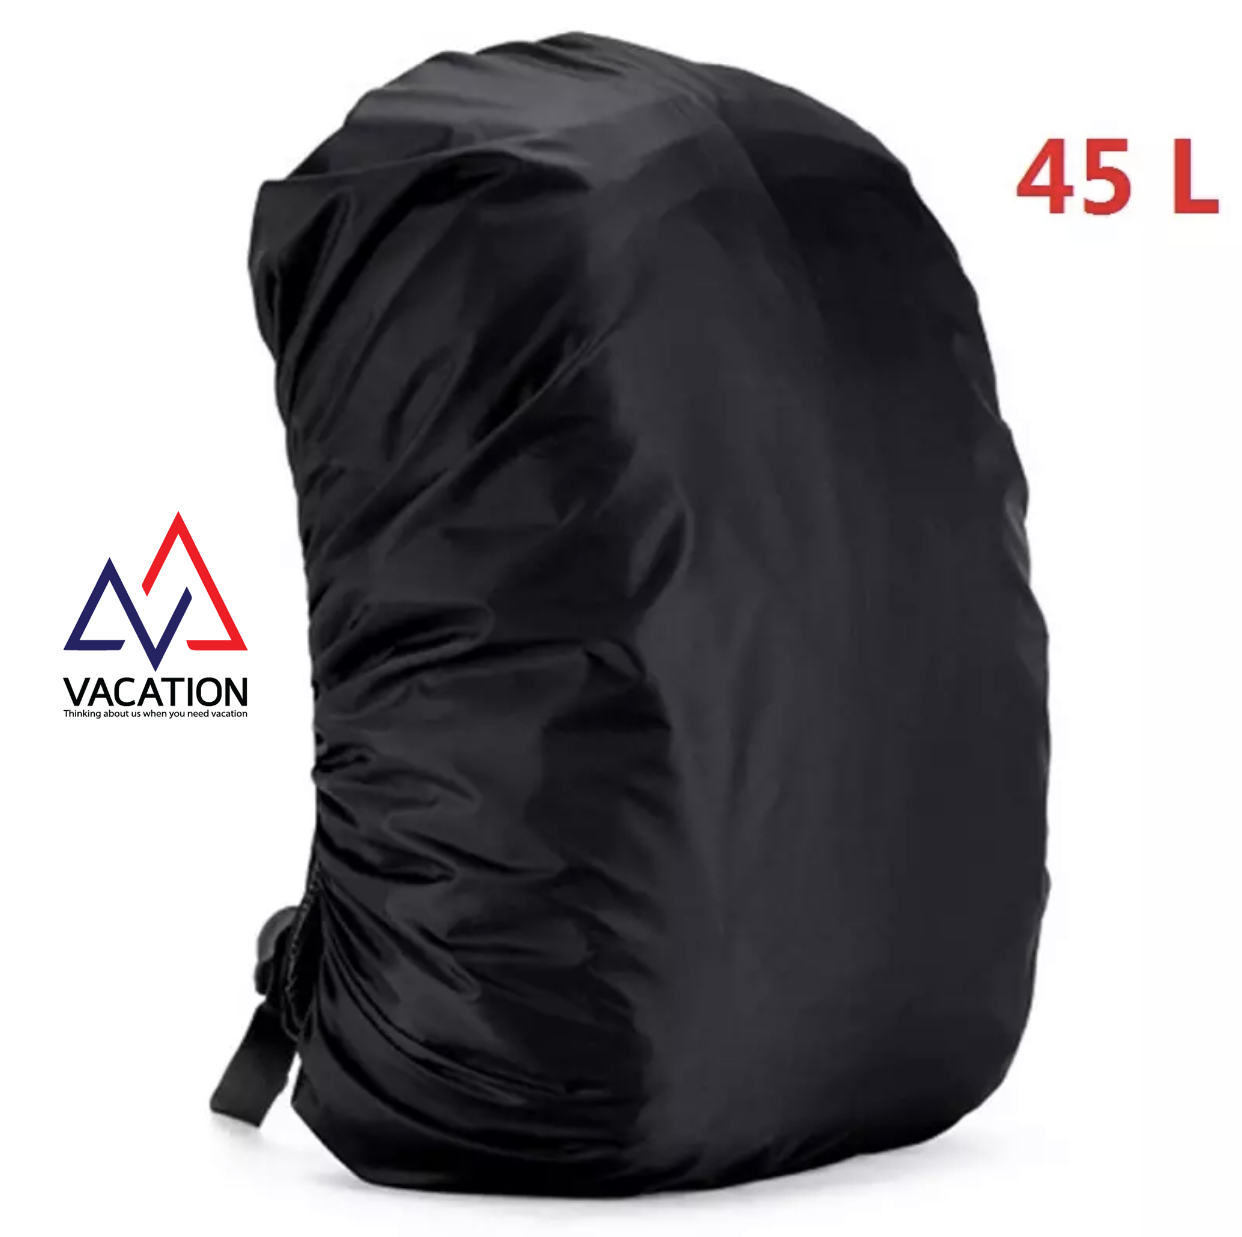 VACATION ส่งจากไทย 45L ลิตร Rain Cover ผ้าคลุมกระเป๋า raincover กันน้ำ กันฝน ผ้าคลุม กระเป๋าสะพายหลัง ป้องกันฝุ่น กัน UV คลุมกระเป๋า แบ็คแพ็ค backpack Camping Hiking 45 ลิตร